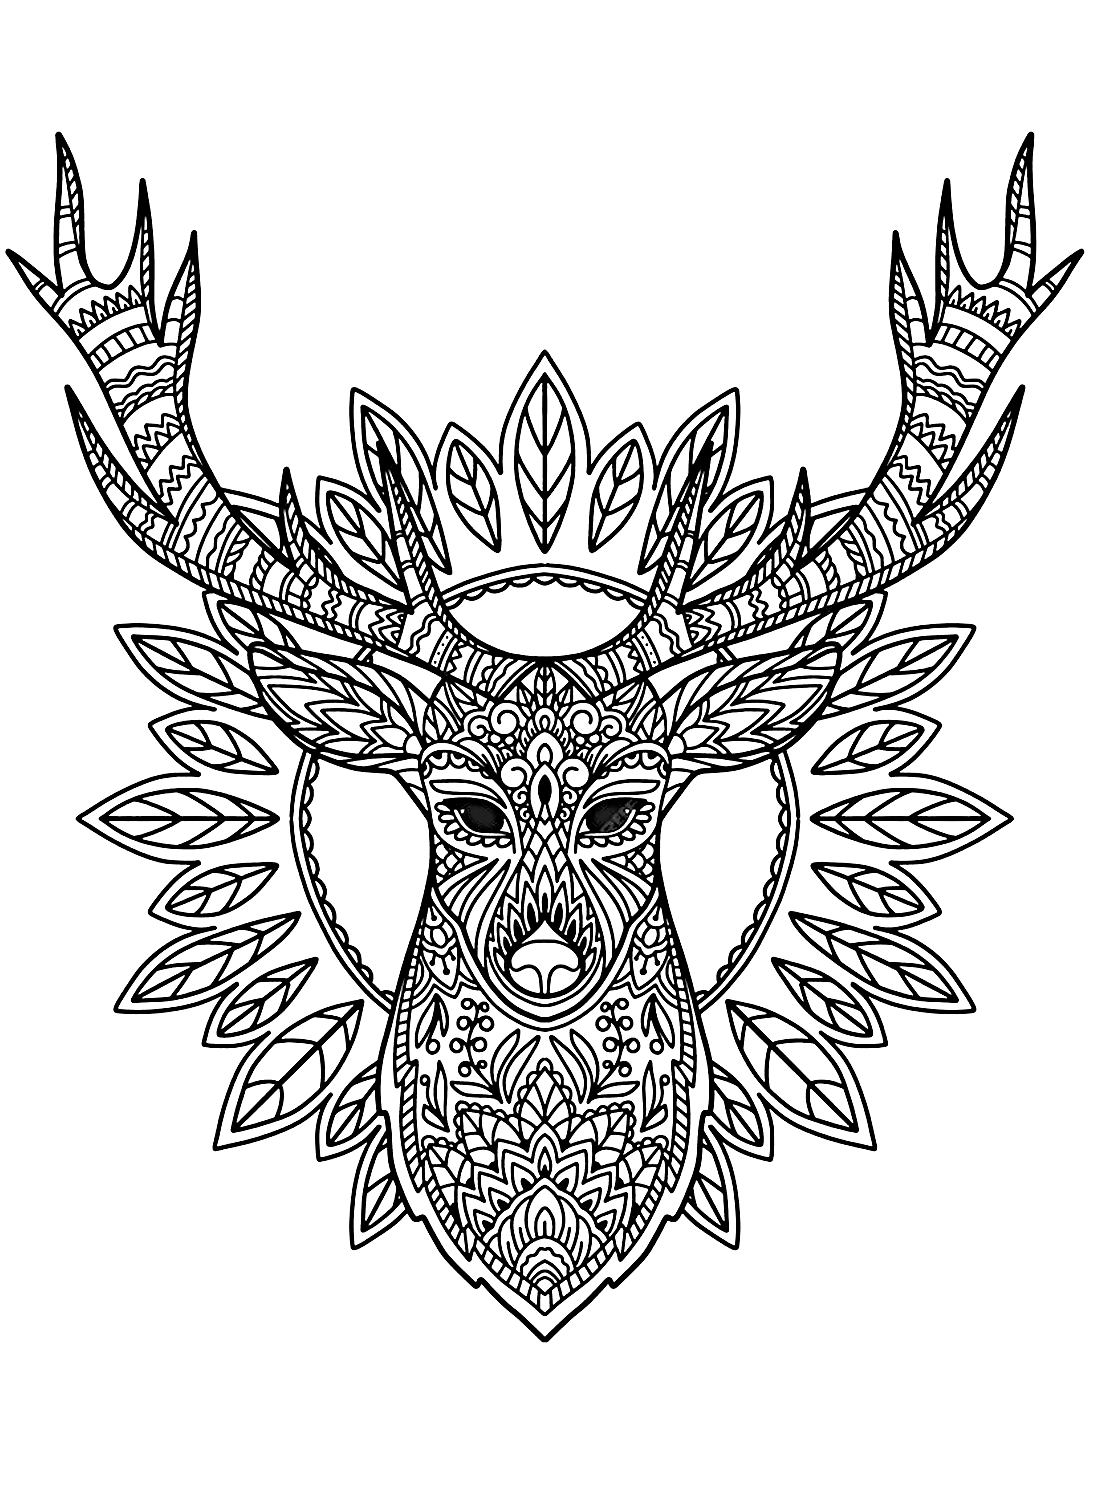 Изображение головы оленя с изображением оленя